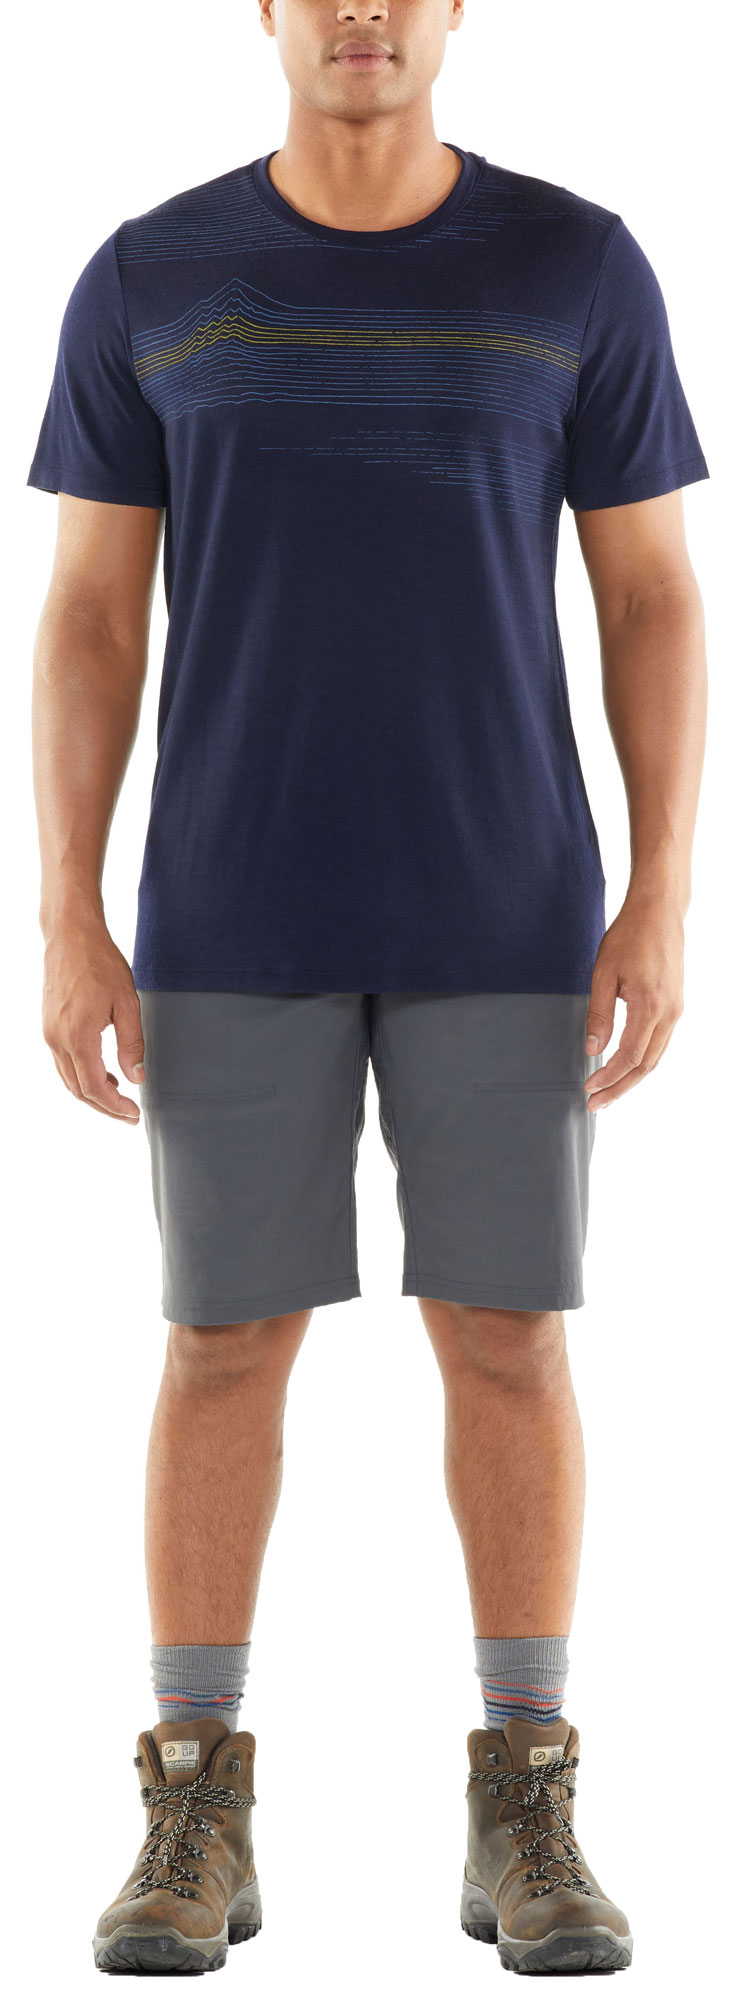 Men's short sleeve T-shirt